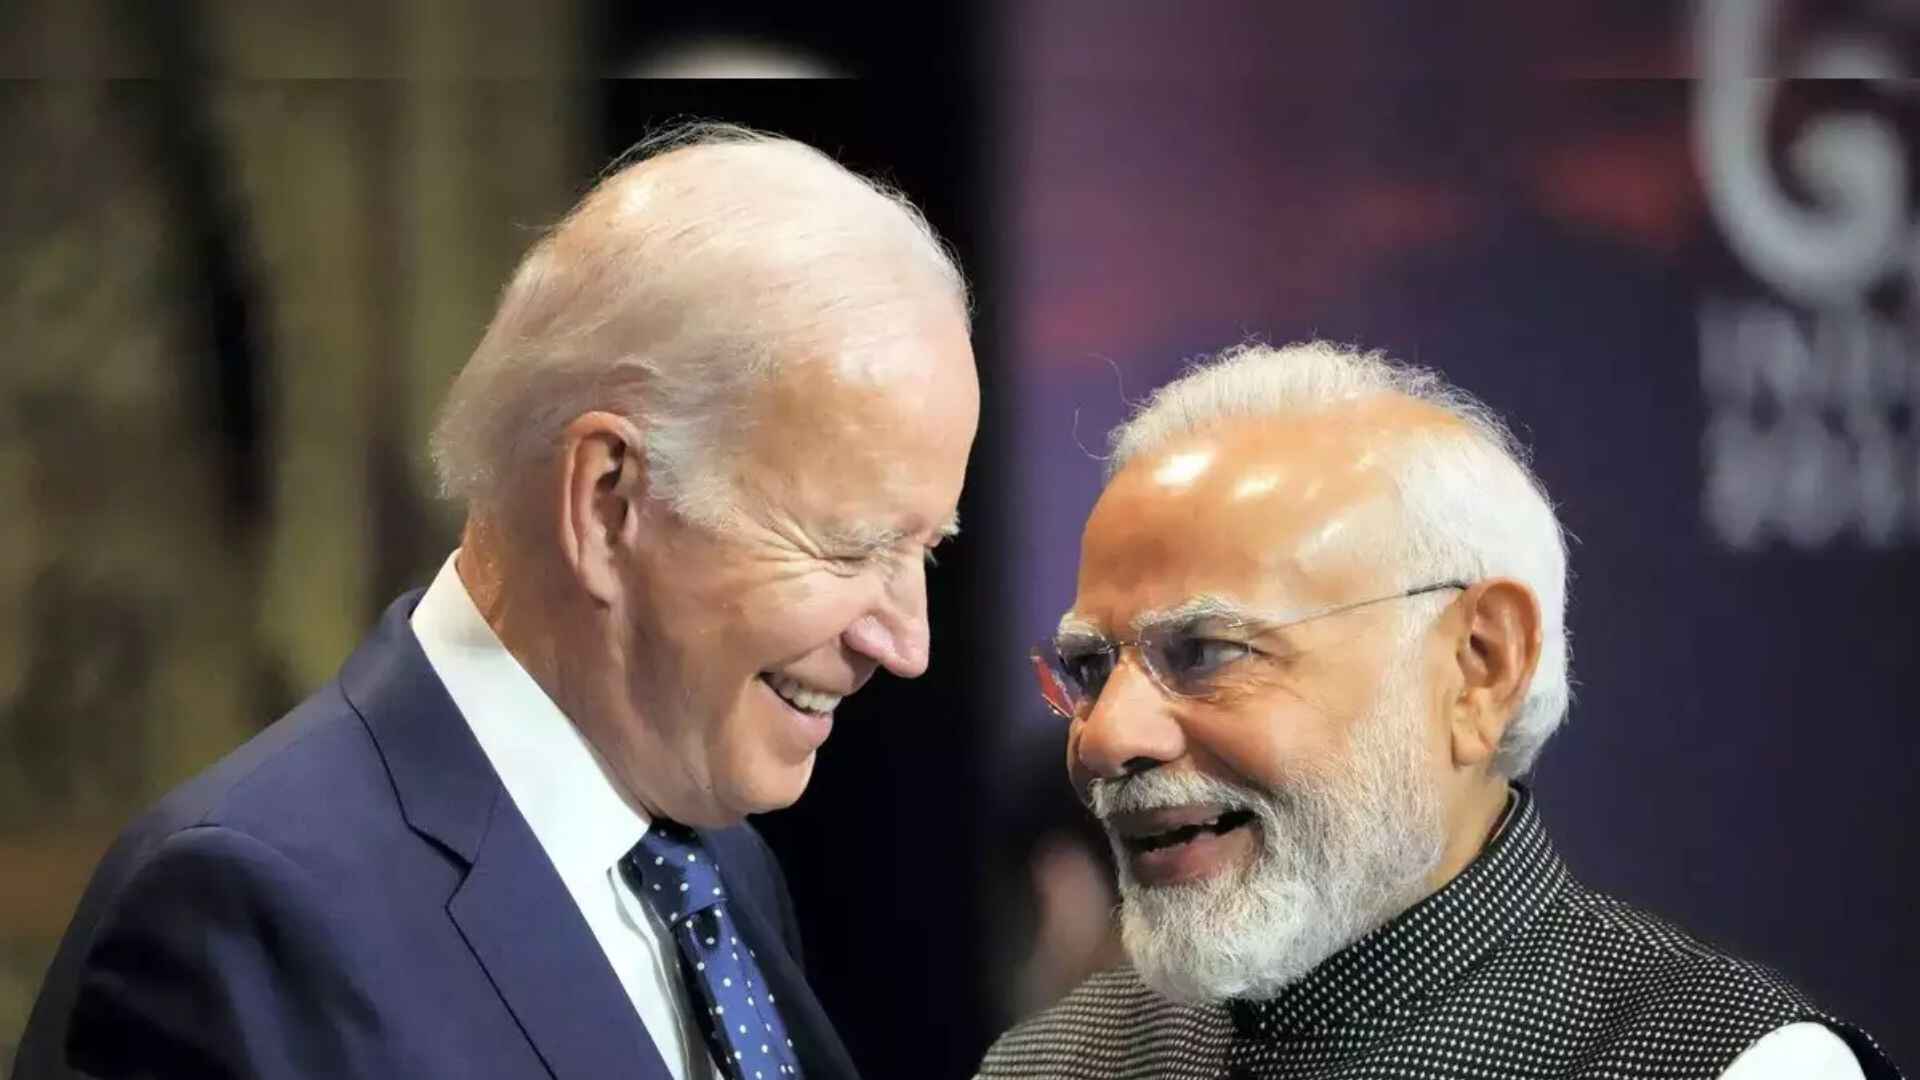 President Joe Biden and Prime Minister Narendra Modi